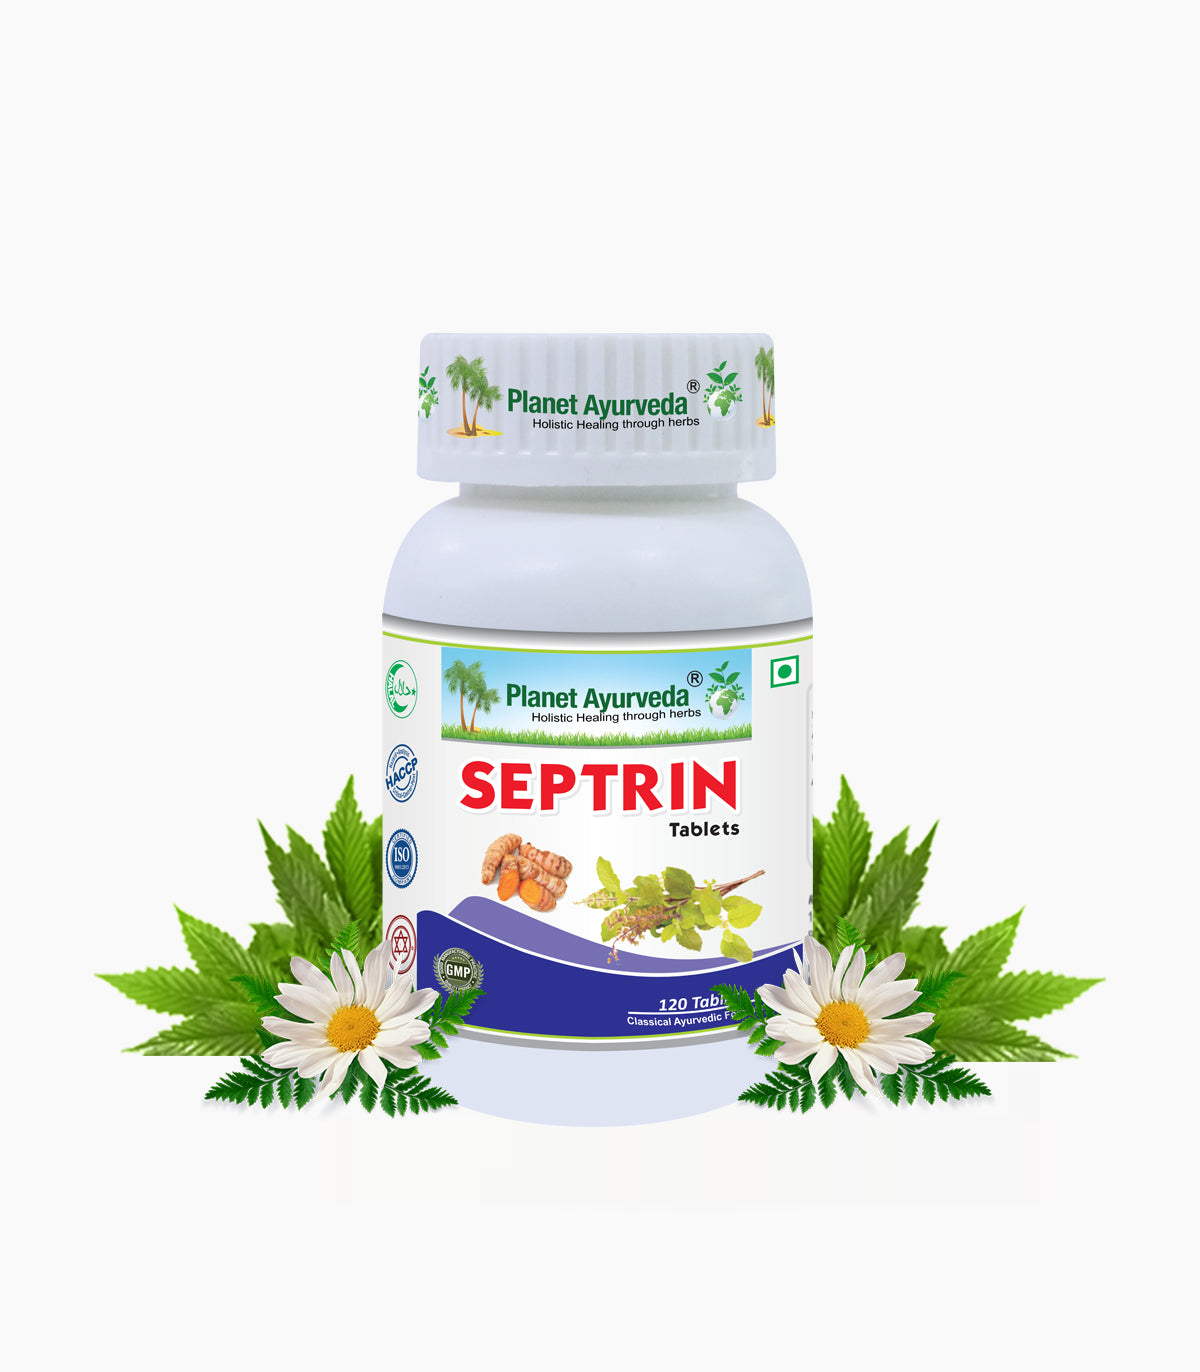 Septrin Tablet Bottle of 120 Tablet